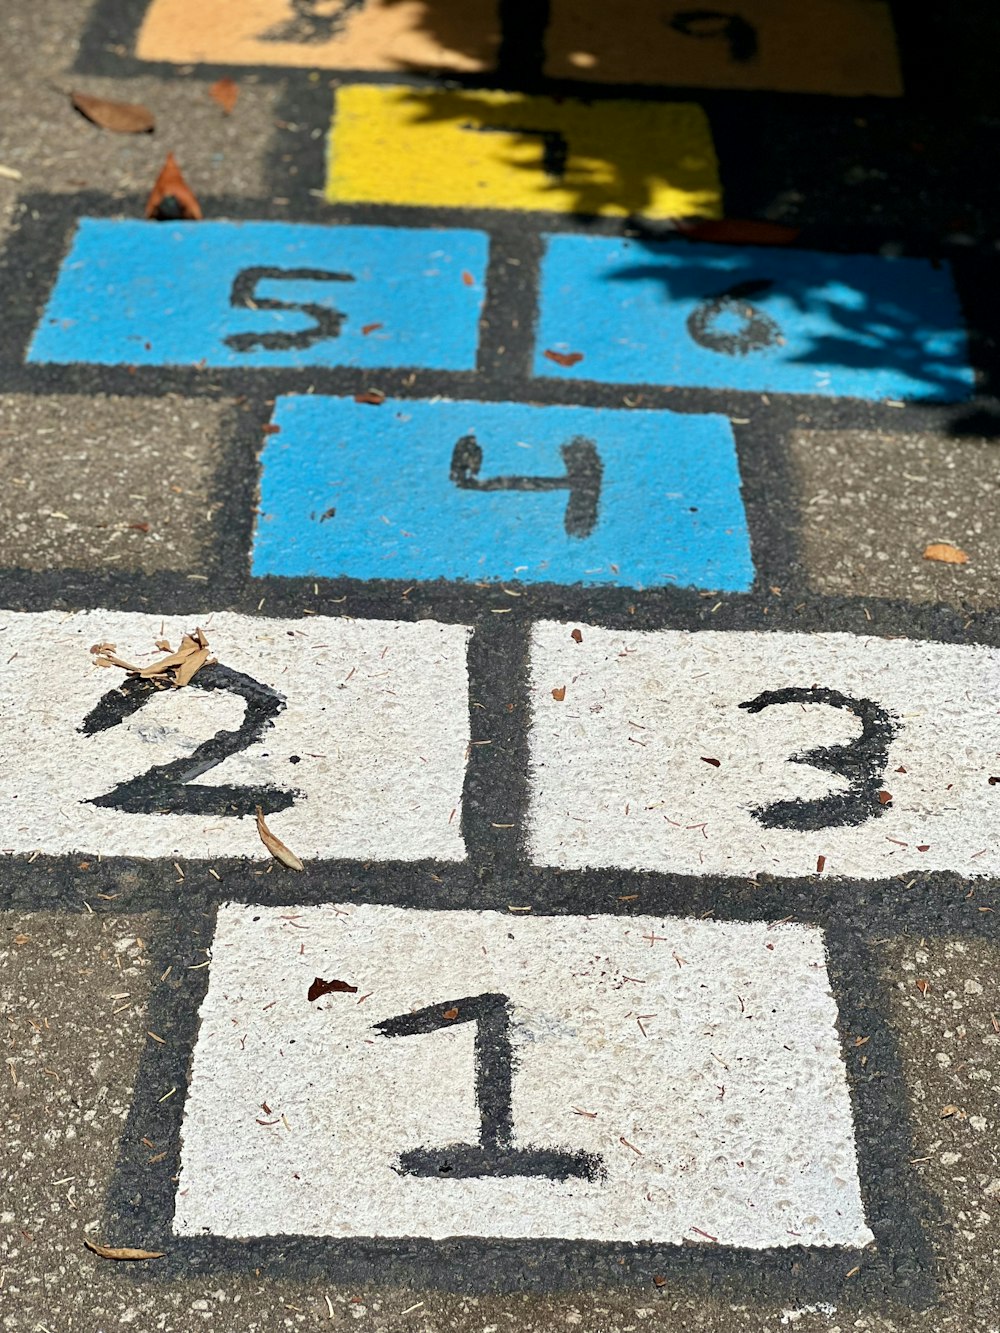 番号が書かれた道路標識